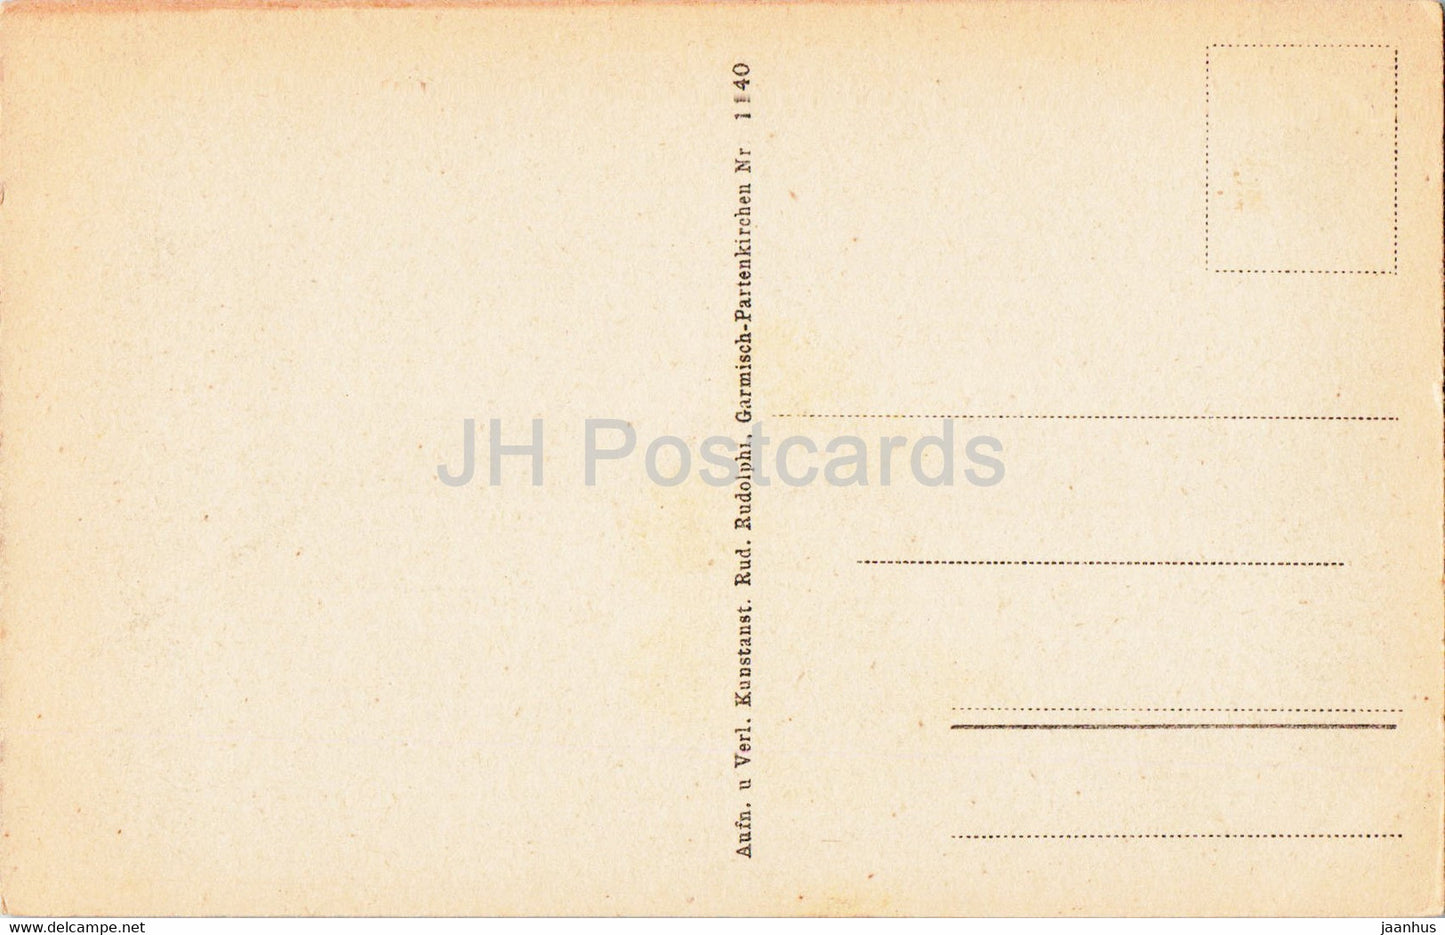 Gewitterstimmung am Eibsee - 1140 - alte Postkarte - Deutschland - unbenutzt